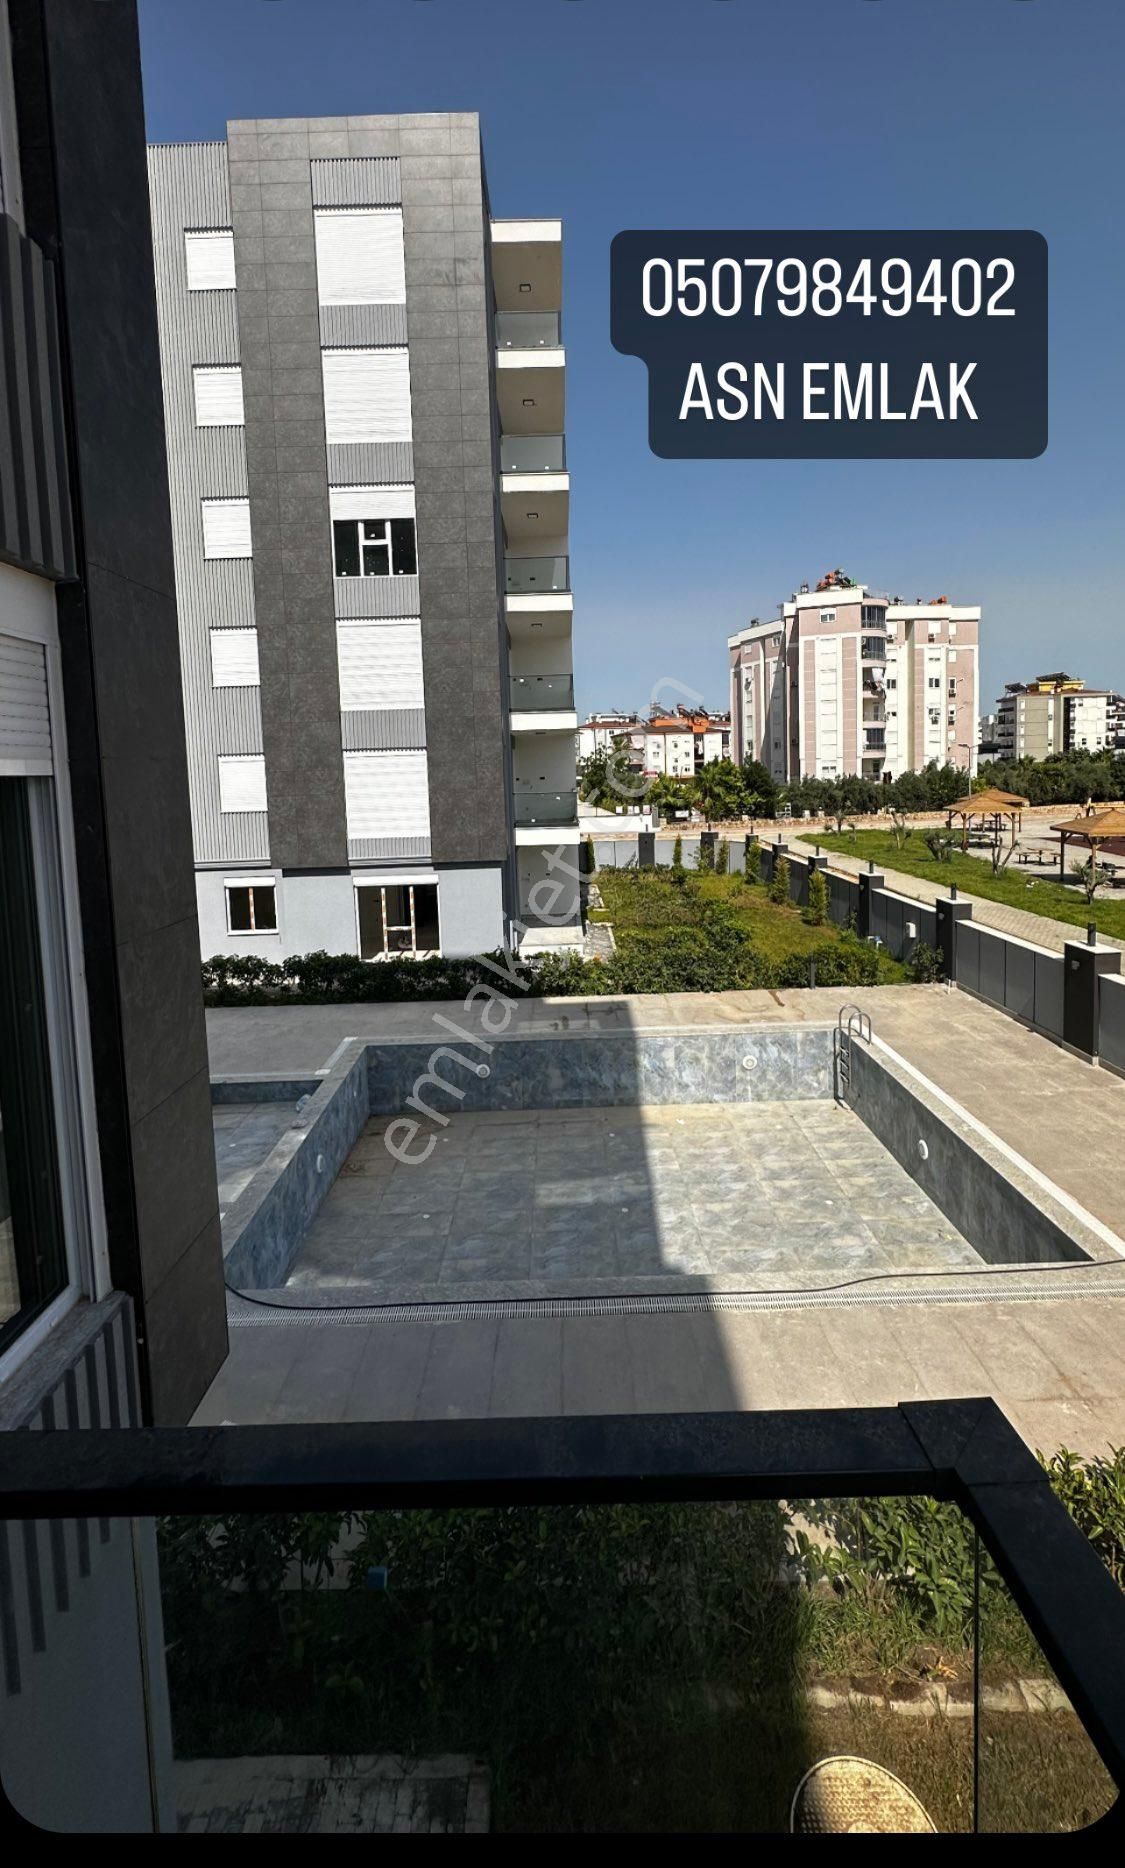 Kepez Hüsnü Karakaş Satılık Daire Antalya kepez hüsnü karakaş mahallesi havuzlu site içinde bitmiş 3 + 1 lüks daireler satılık 